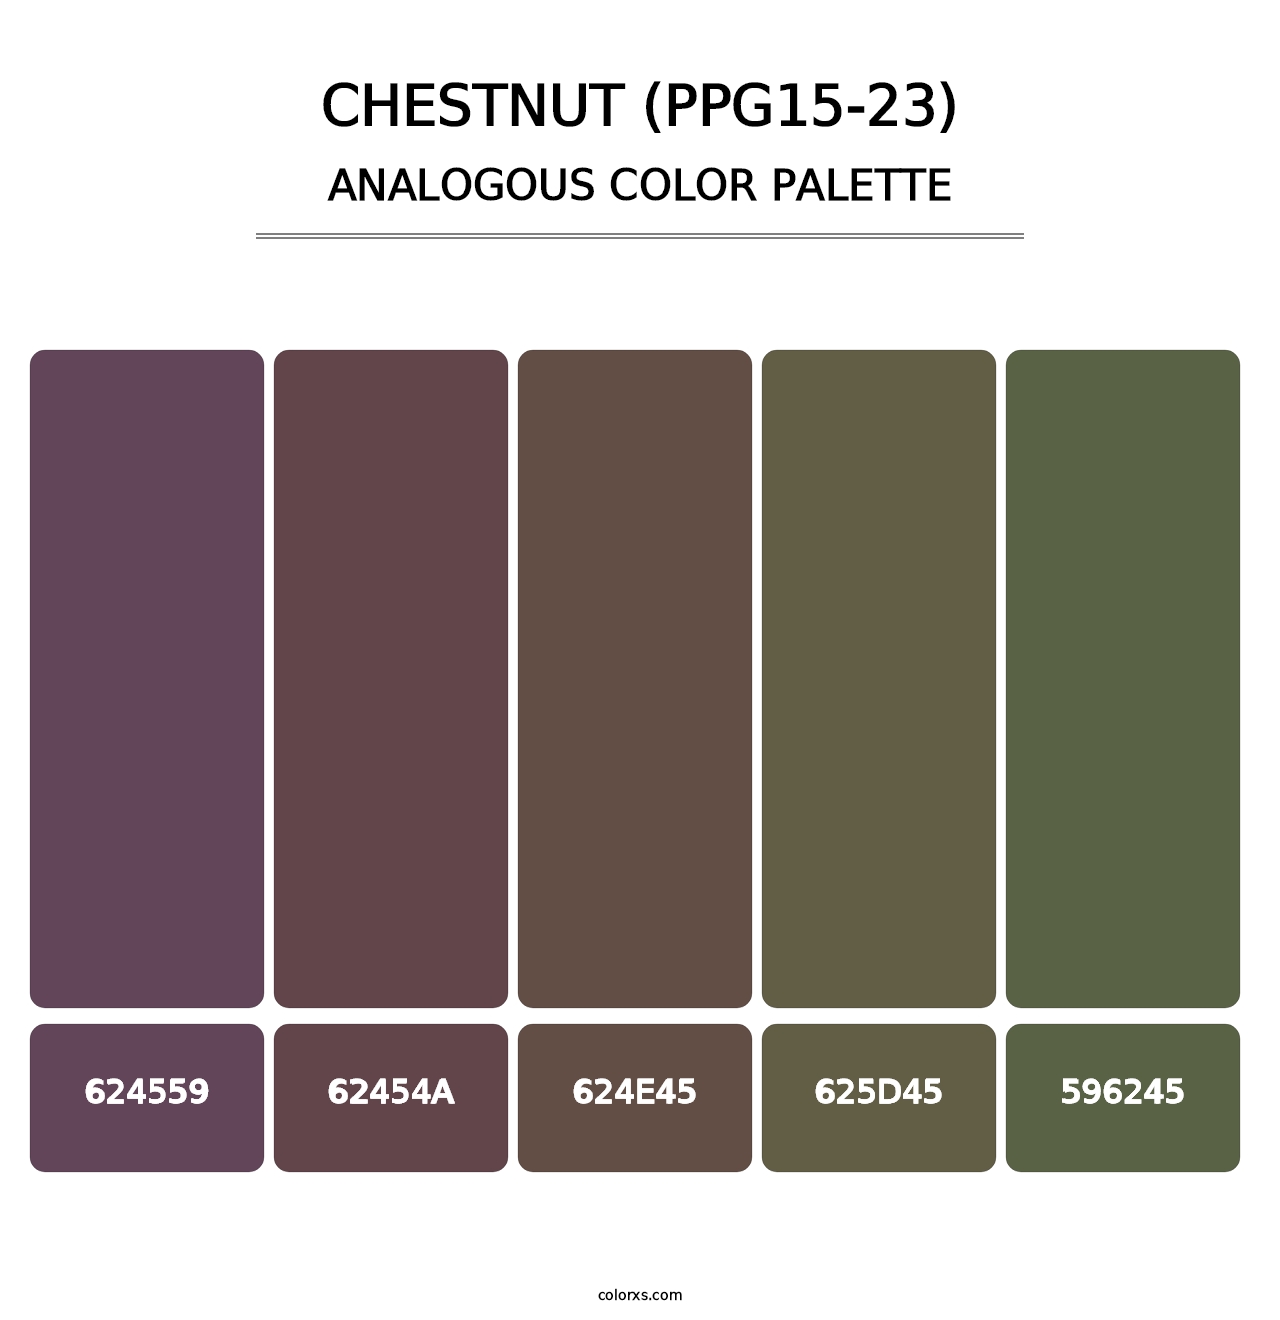 Chestnut (PPG15-23) - Analogous Color Palette